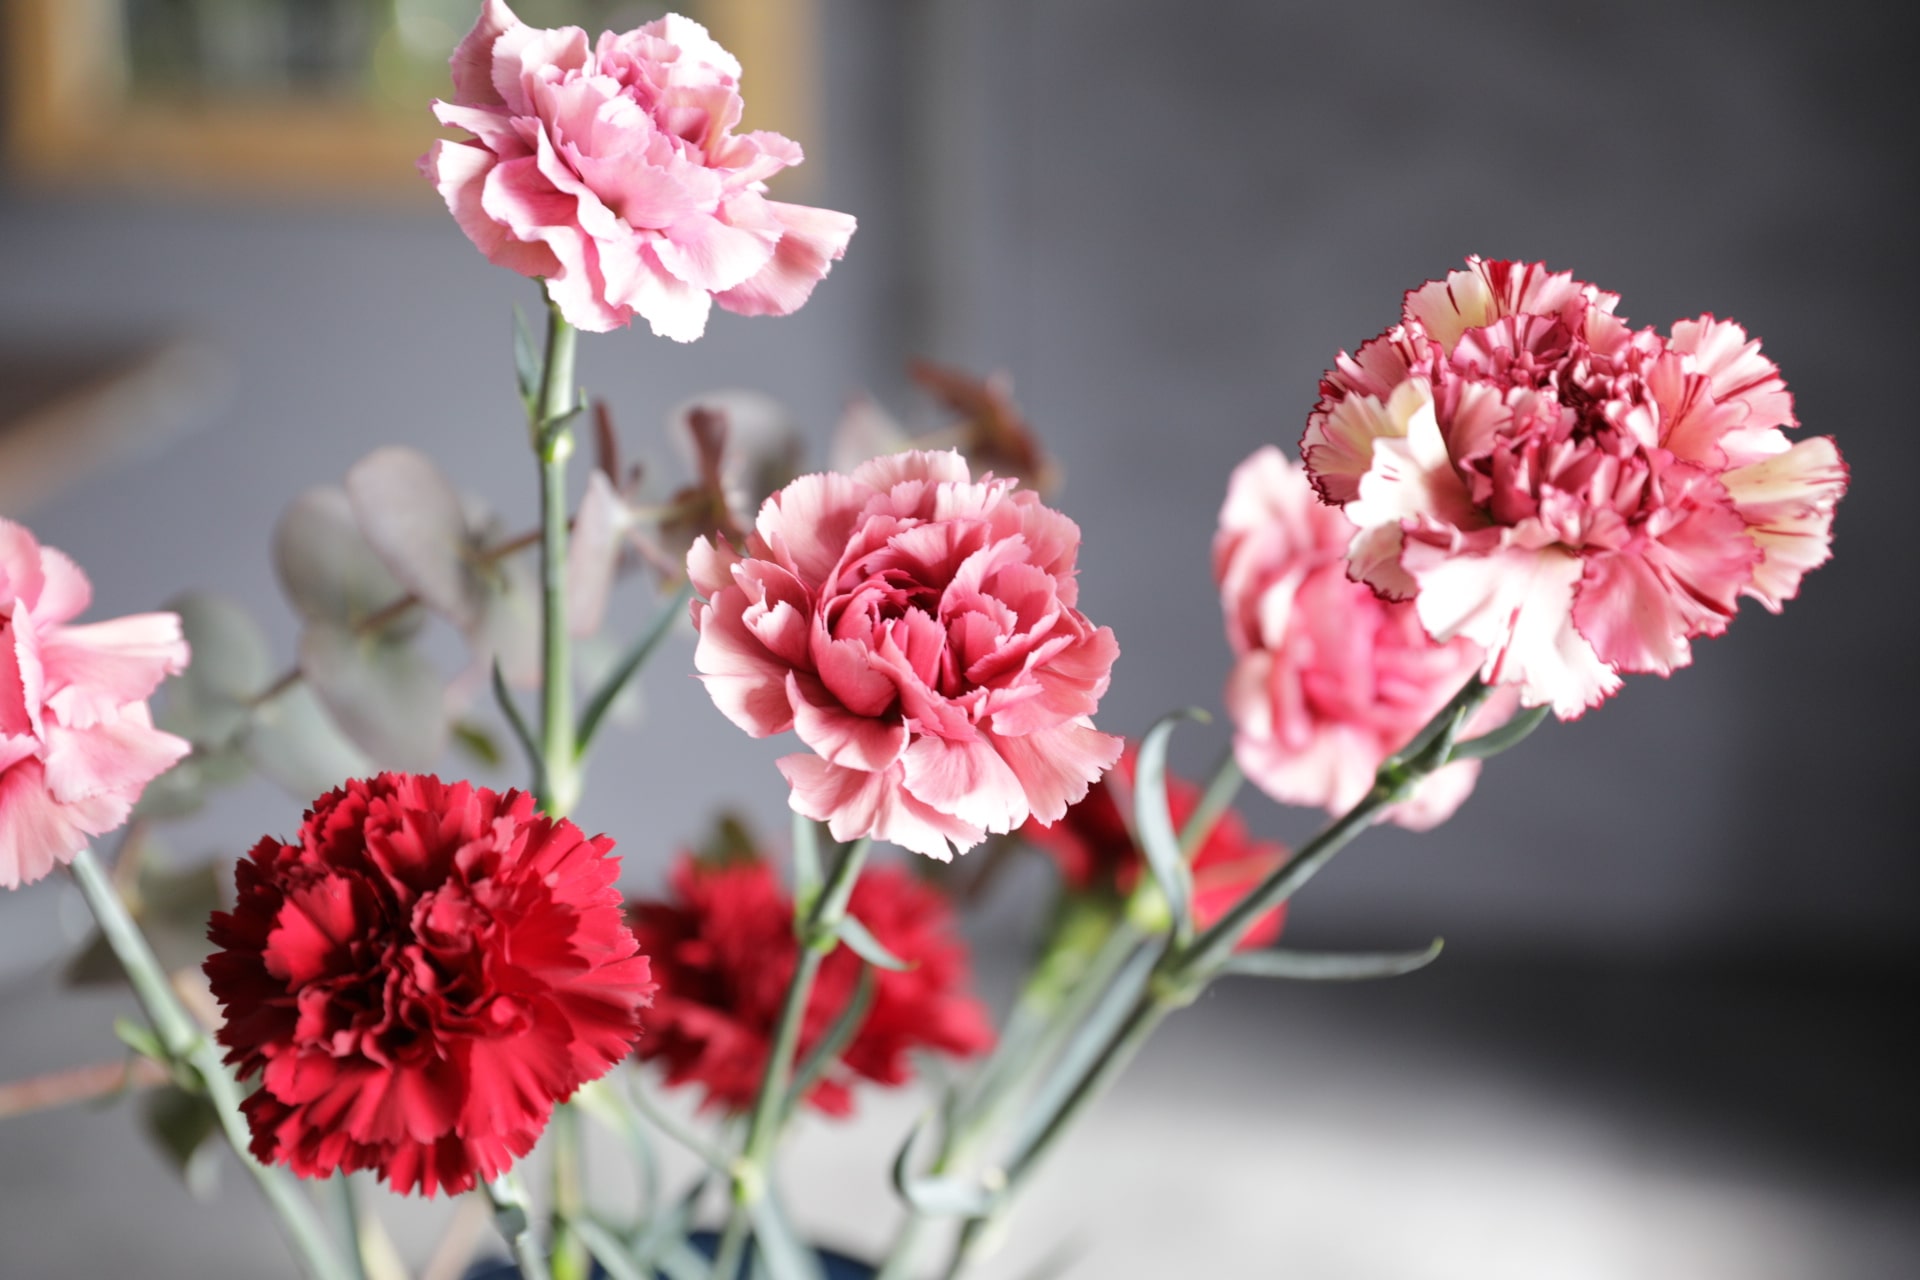 母の日に贈りたい 人気の花ランキング 青山フラワーマーケット 青山フラワーマーケット公式 花屋 花 花束 フラワーギフト 通販